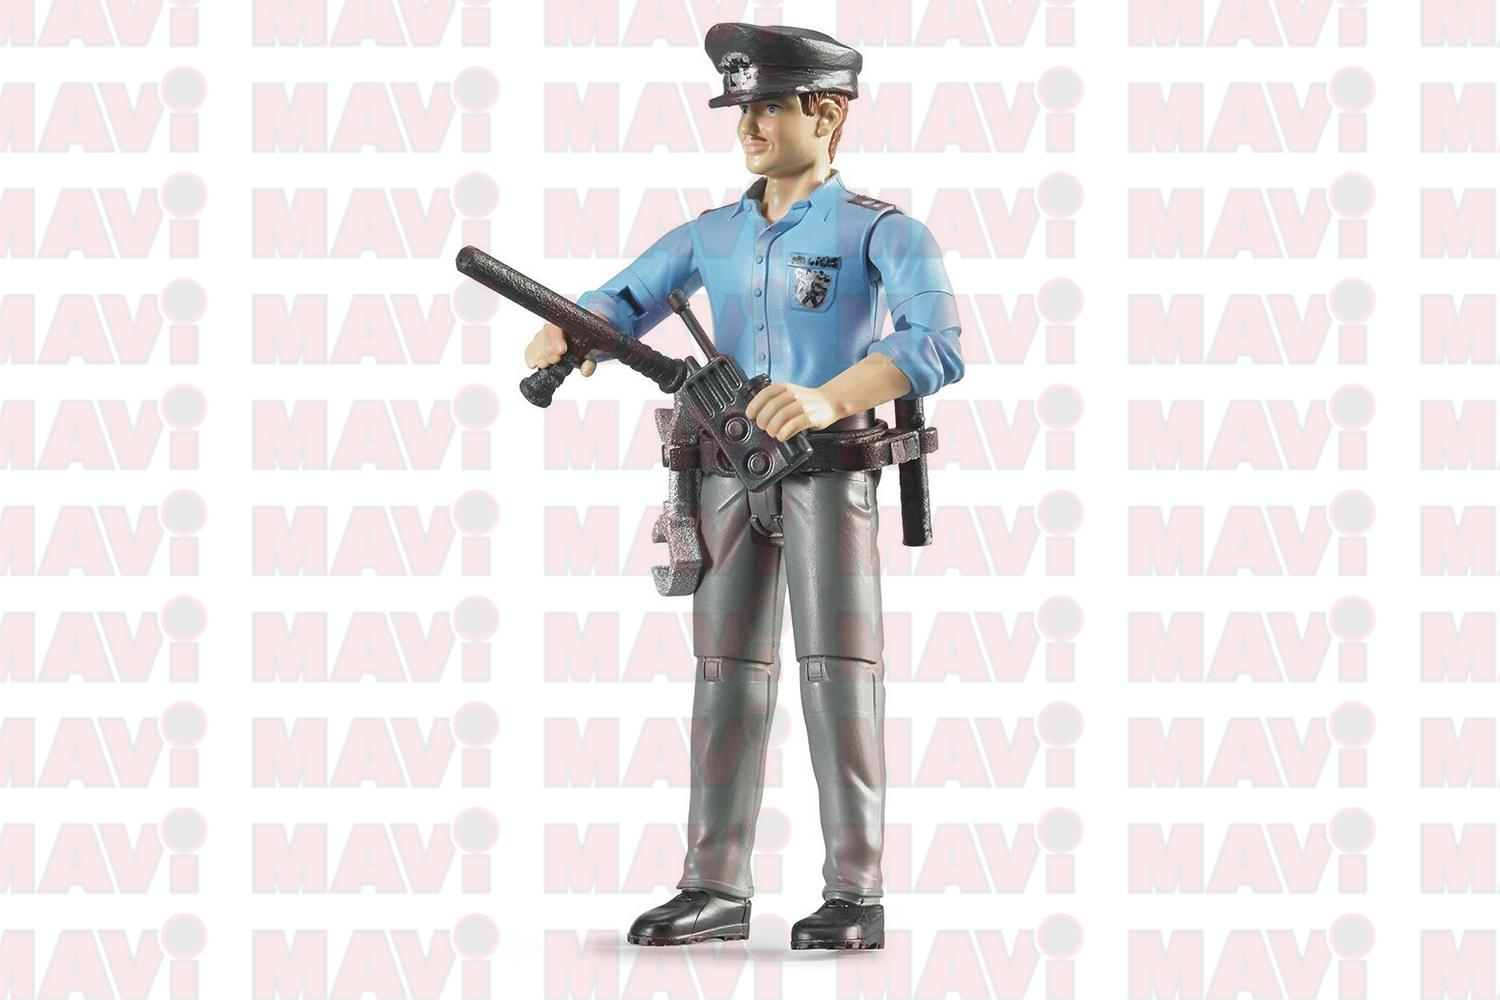 Jucarie Bruder, figurina barbat politist # 60060050